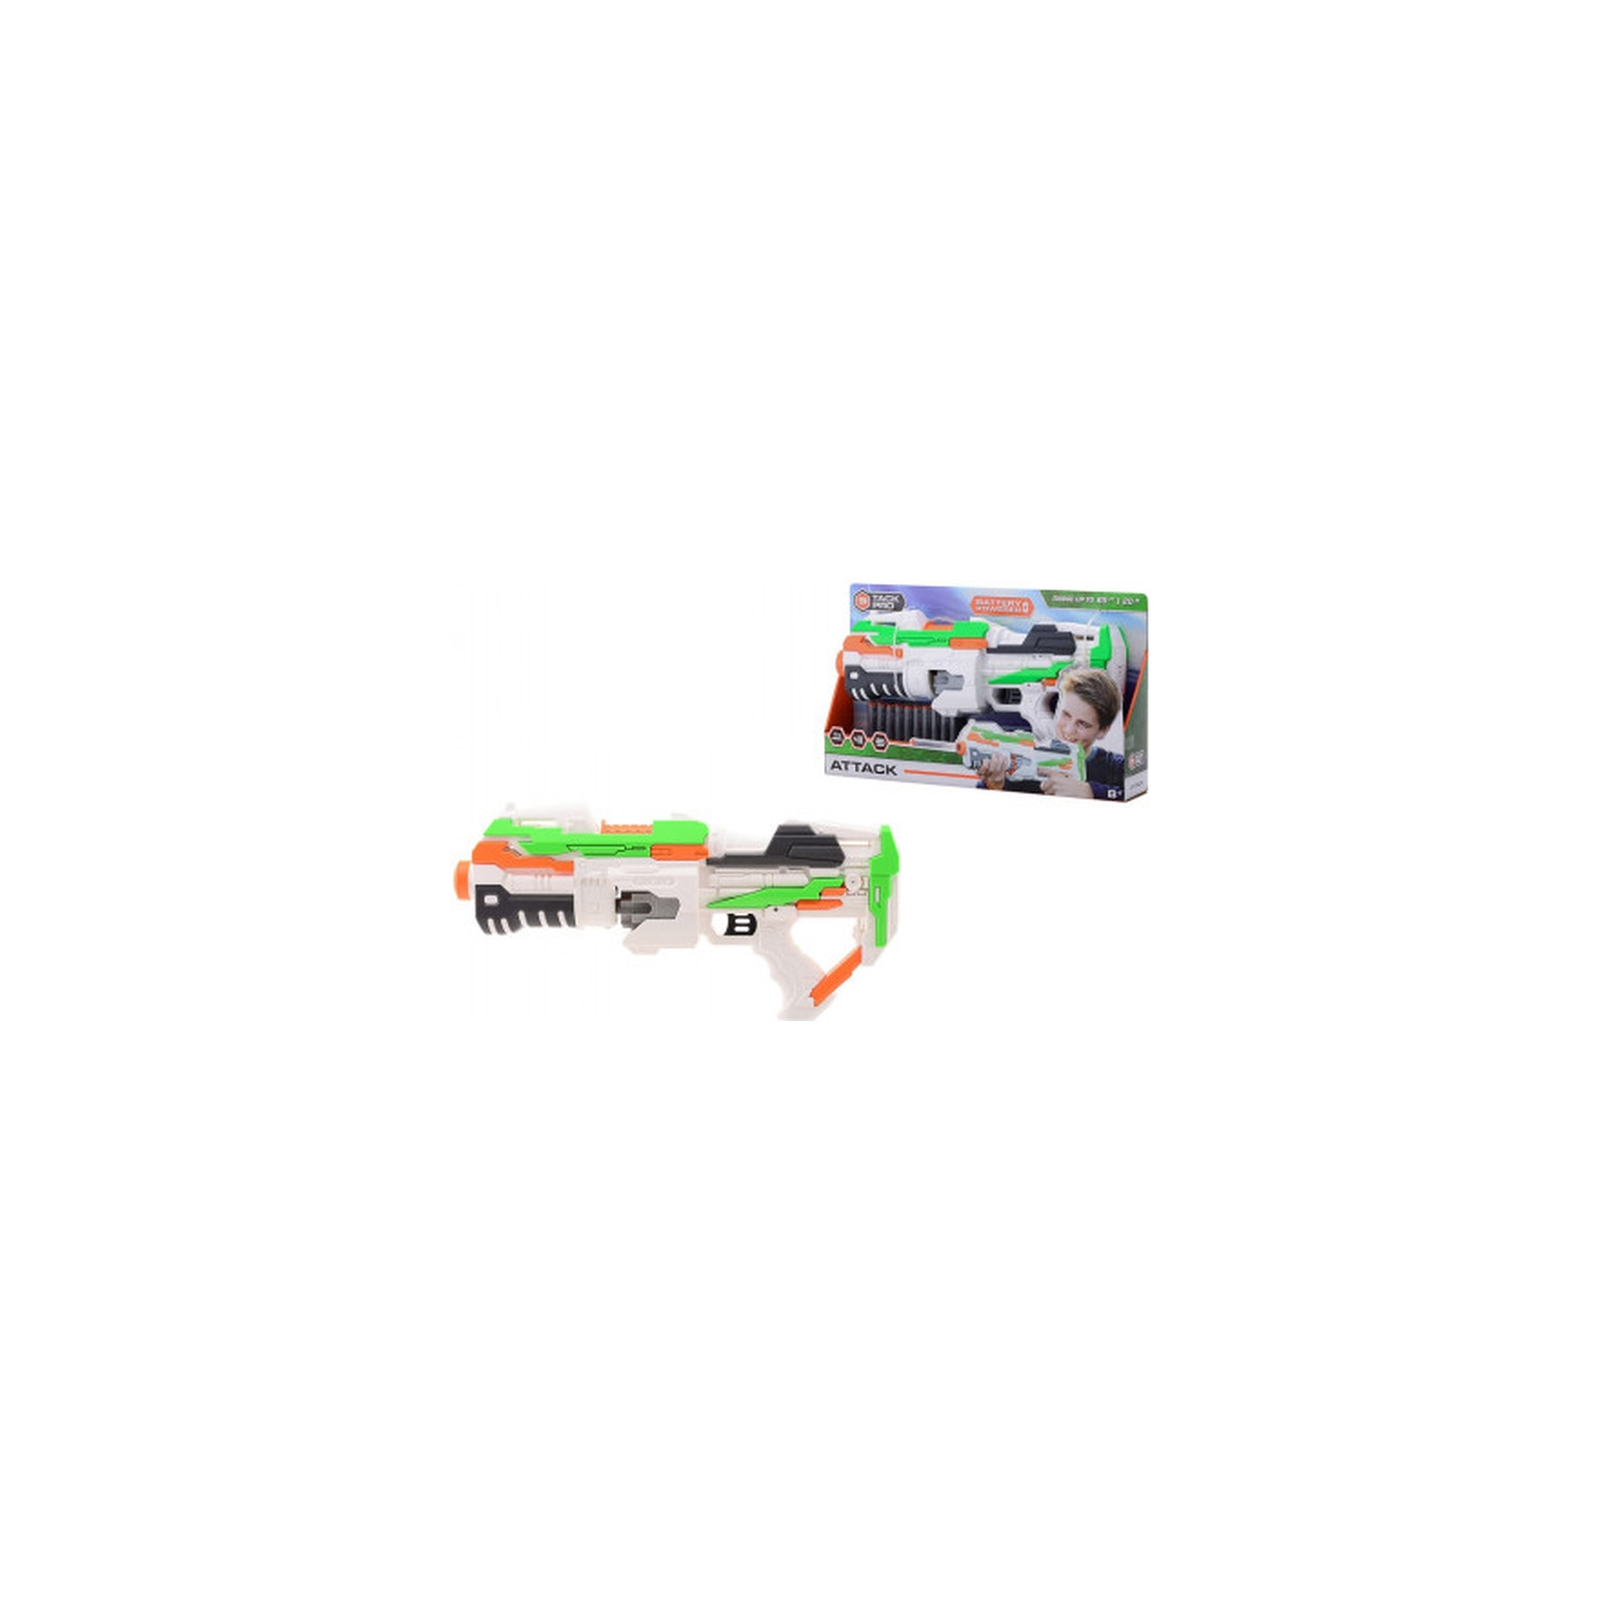 Іграшкова зброя Tack Pro Бластер Attack (6337448) зображення 2